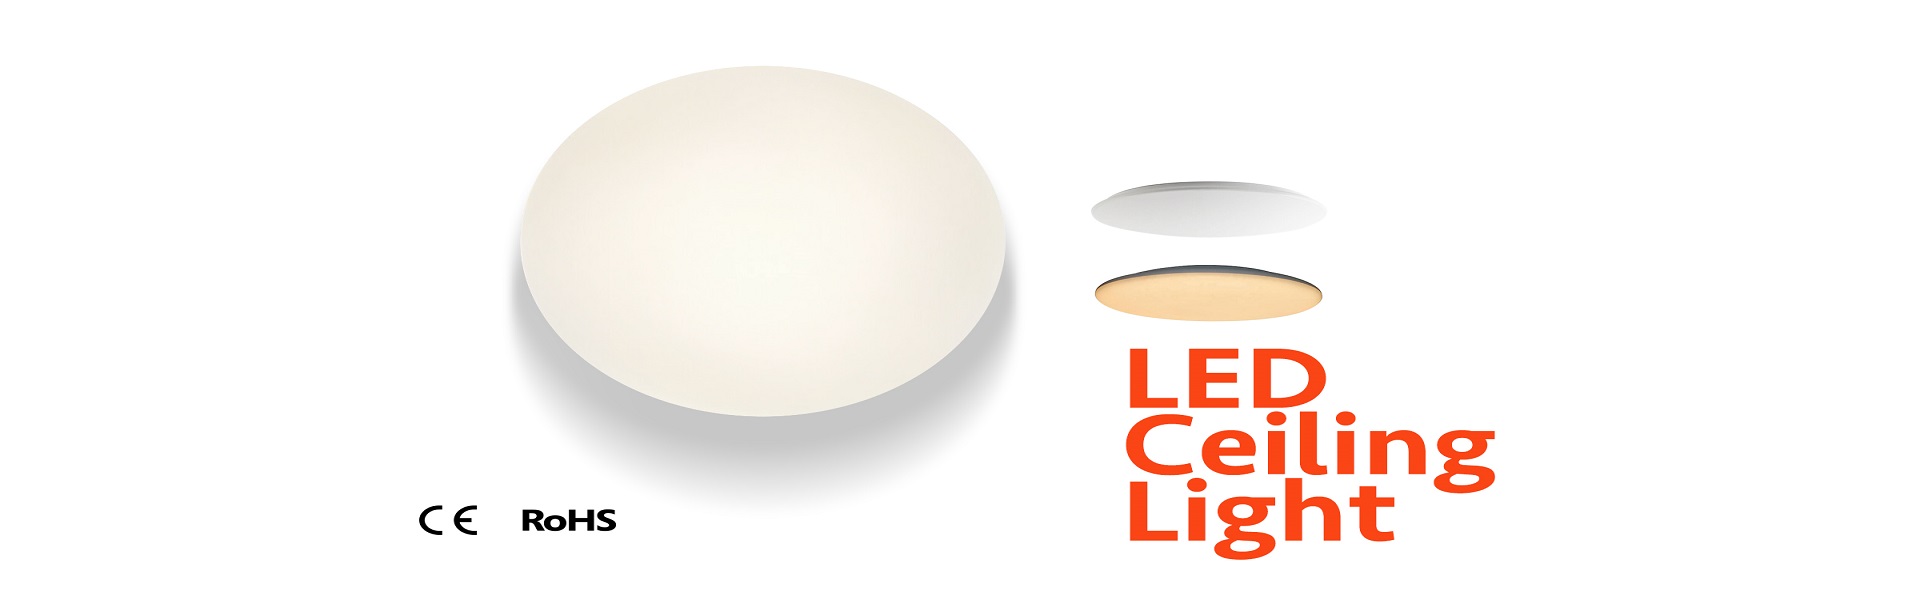 I-12-LED-Ceiling-Light